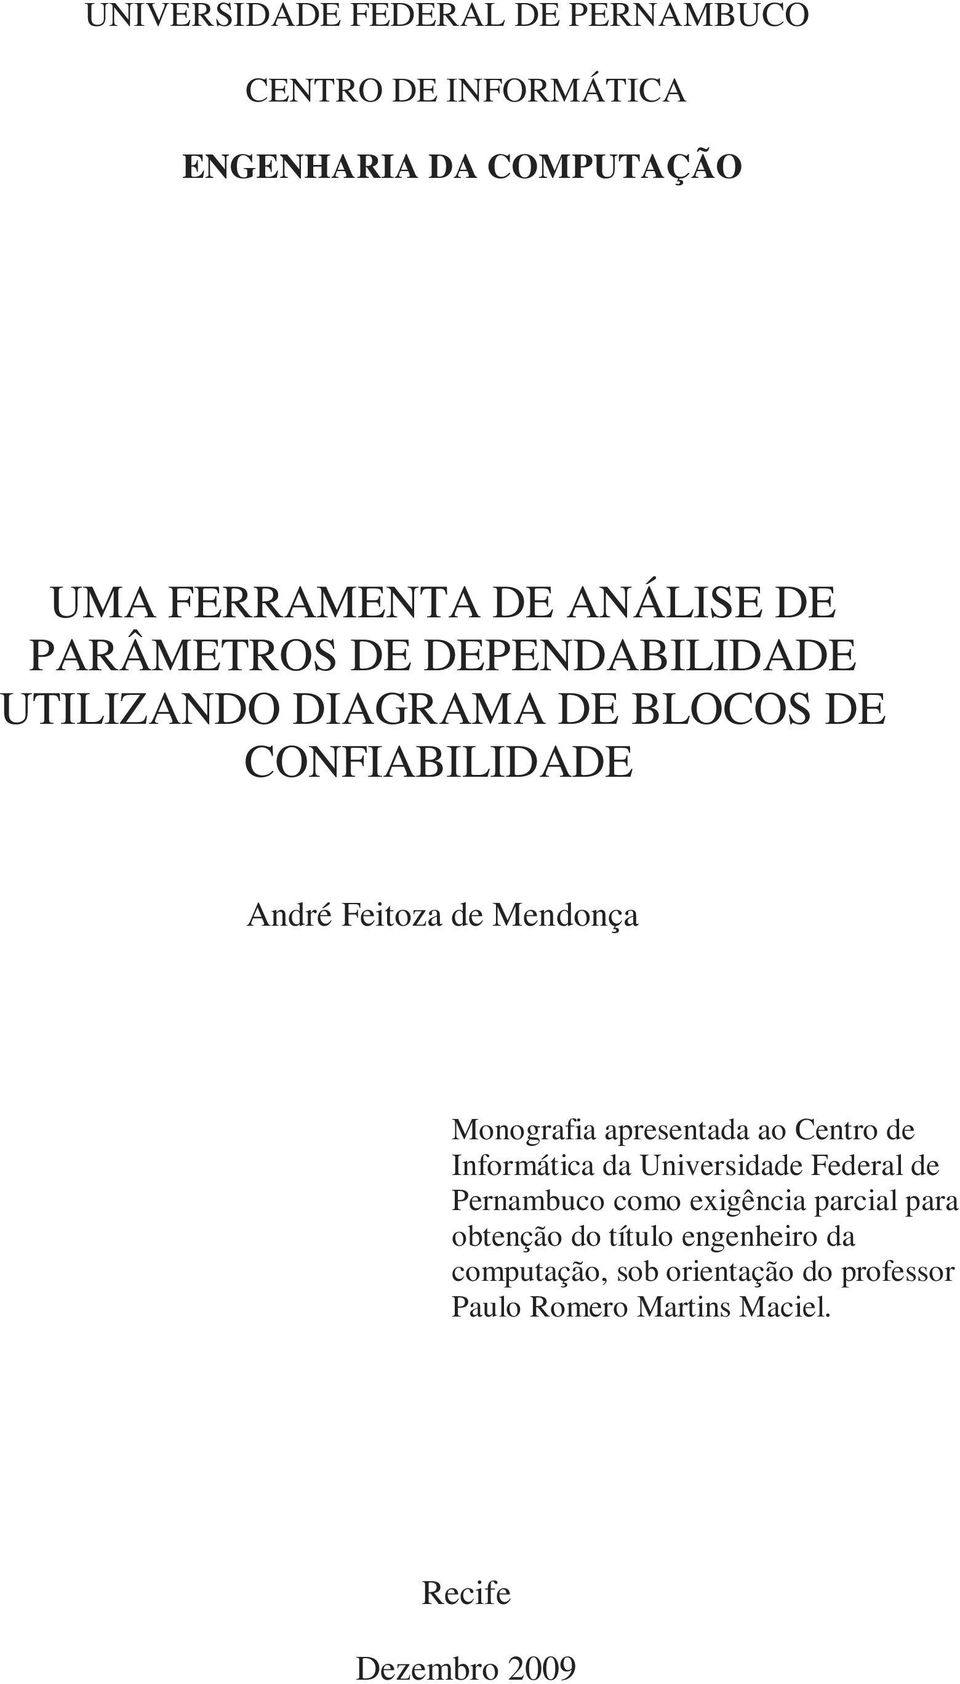 Monografia apresentada ao Centro de Informática da Universidade Federal de Pernambuco como exigência parcial